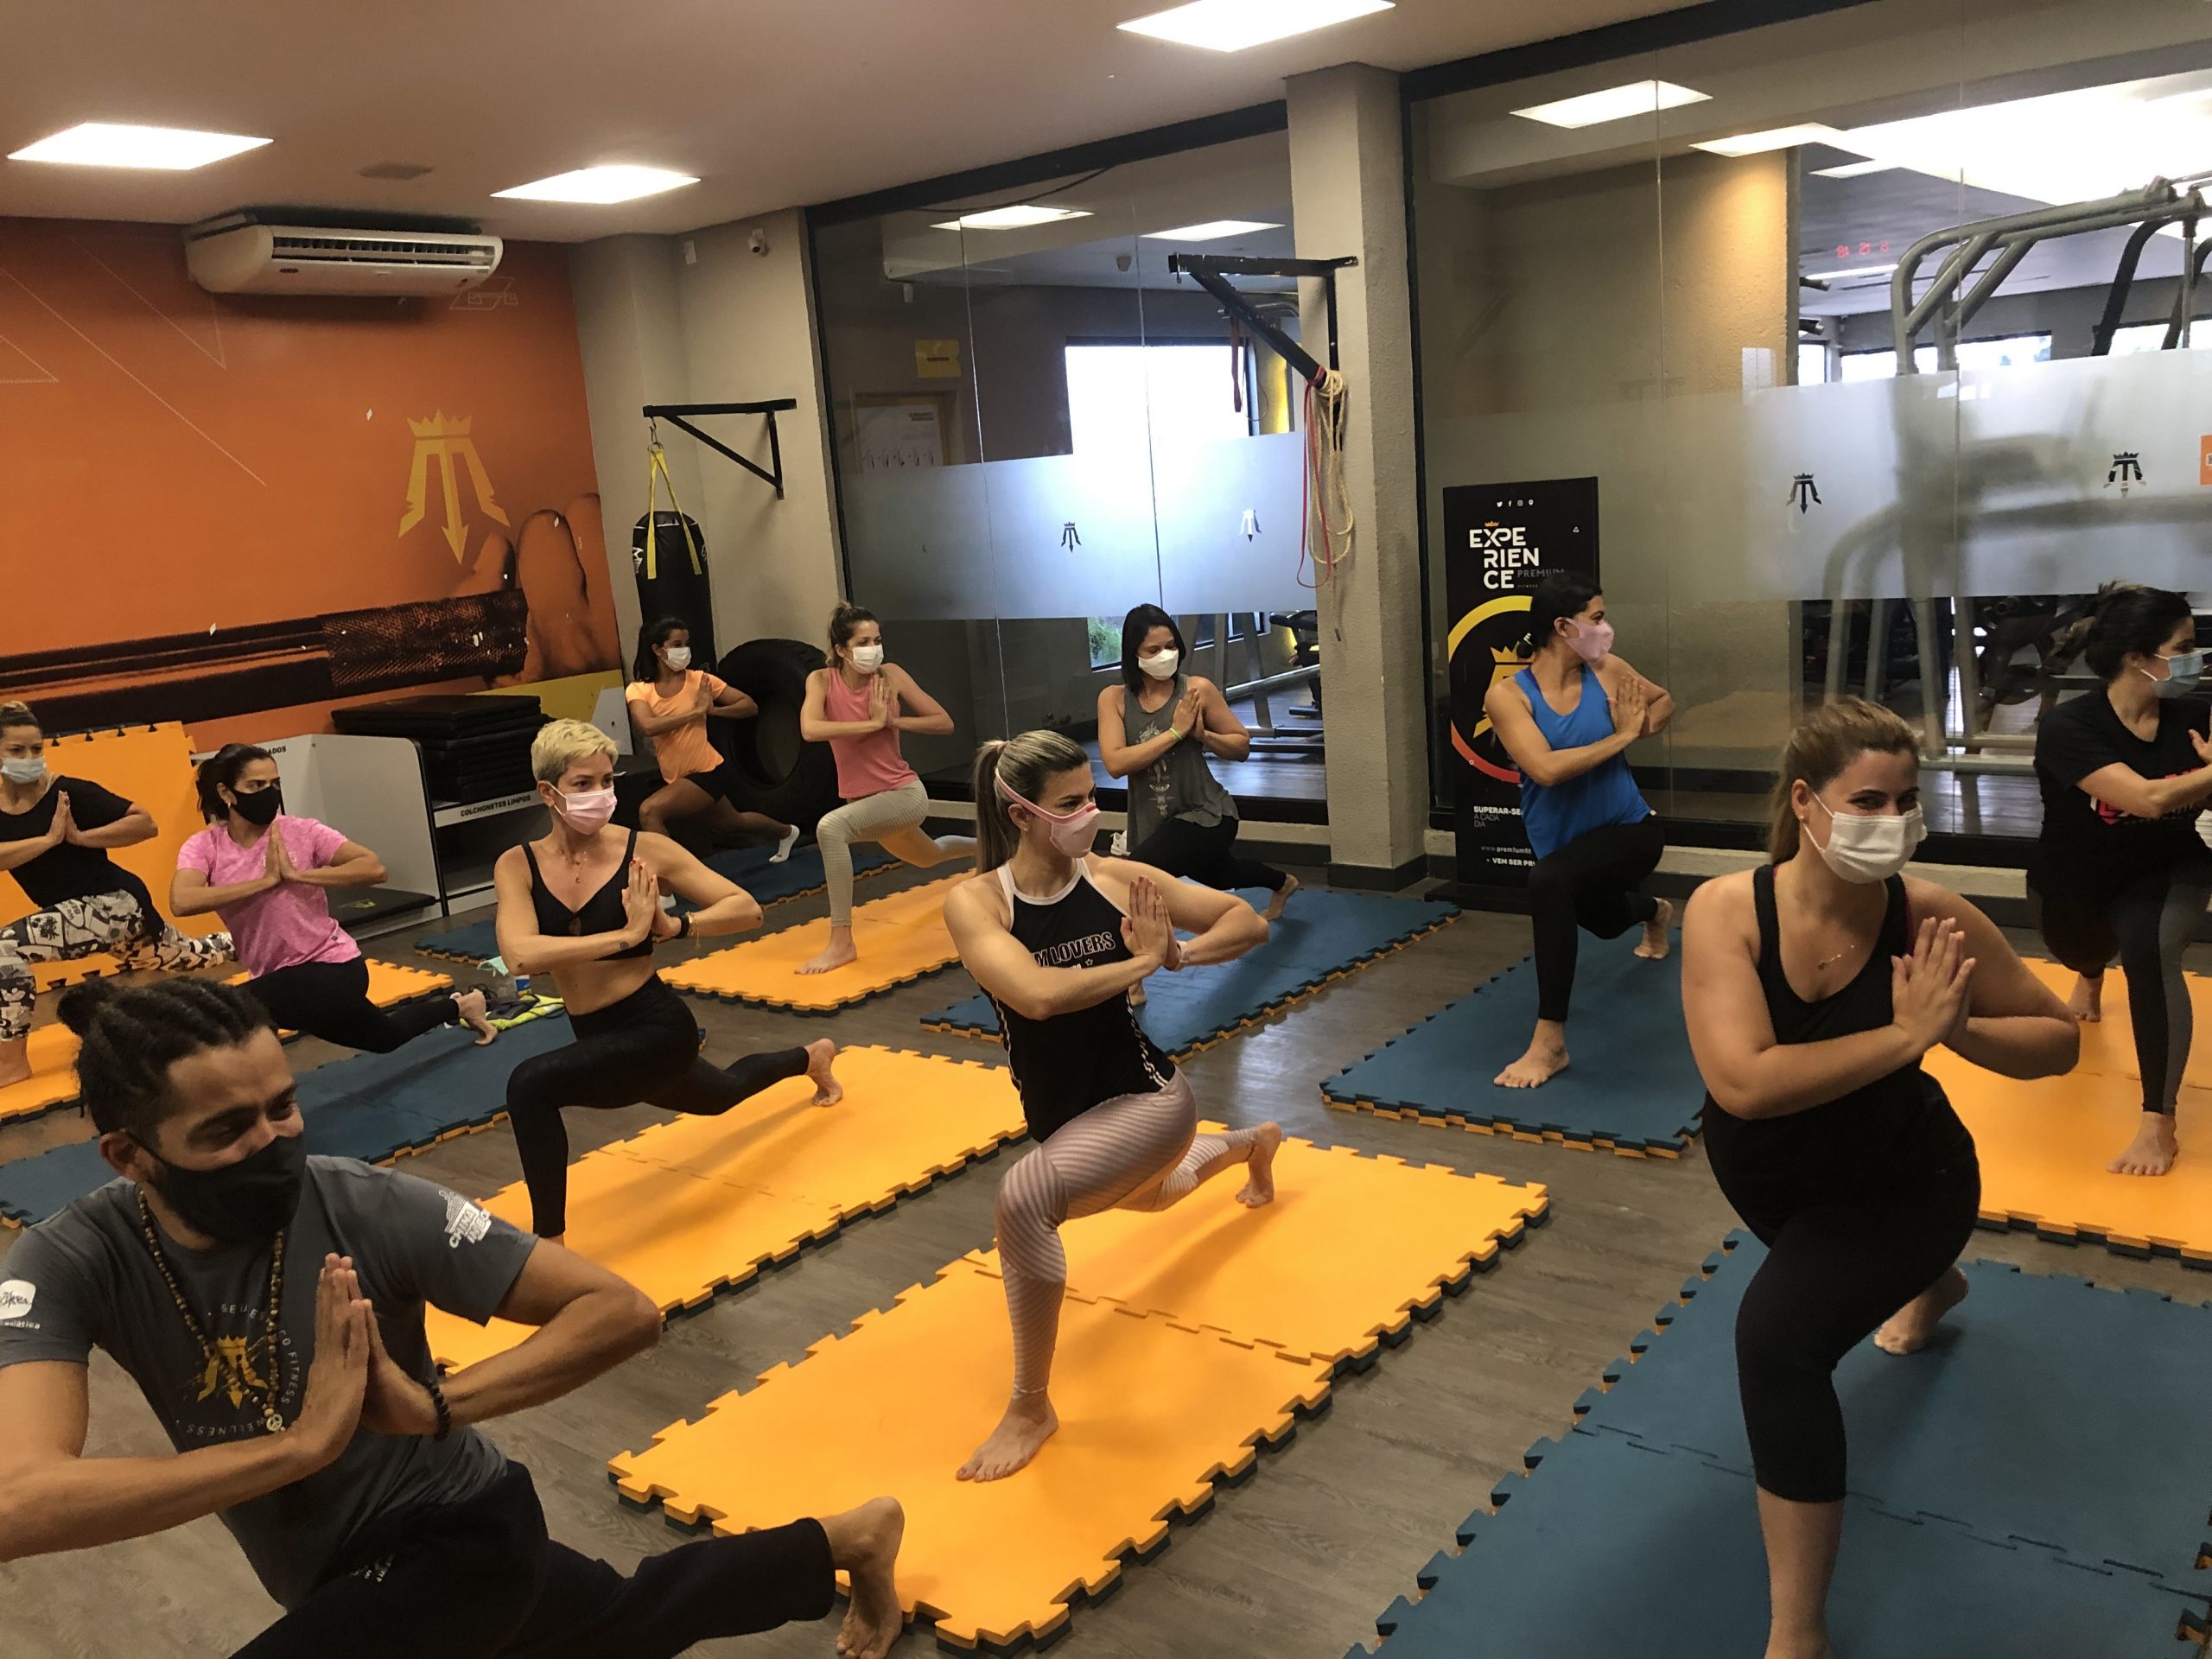  HATHA YOGA |  Modalidade Prem1um Fitness | Academia em Maceió | O seu espaço fitness e wellness em Maceió